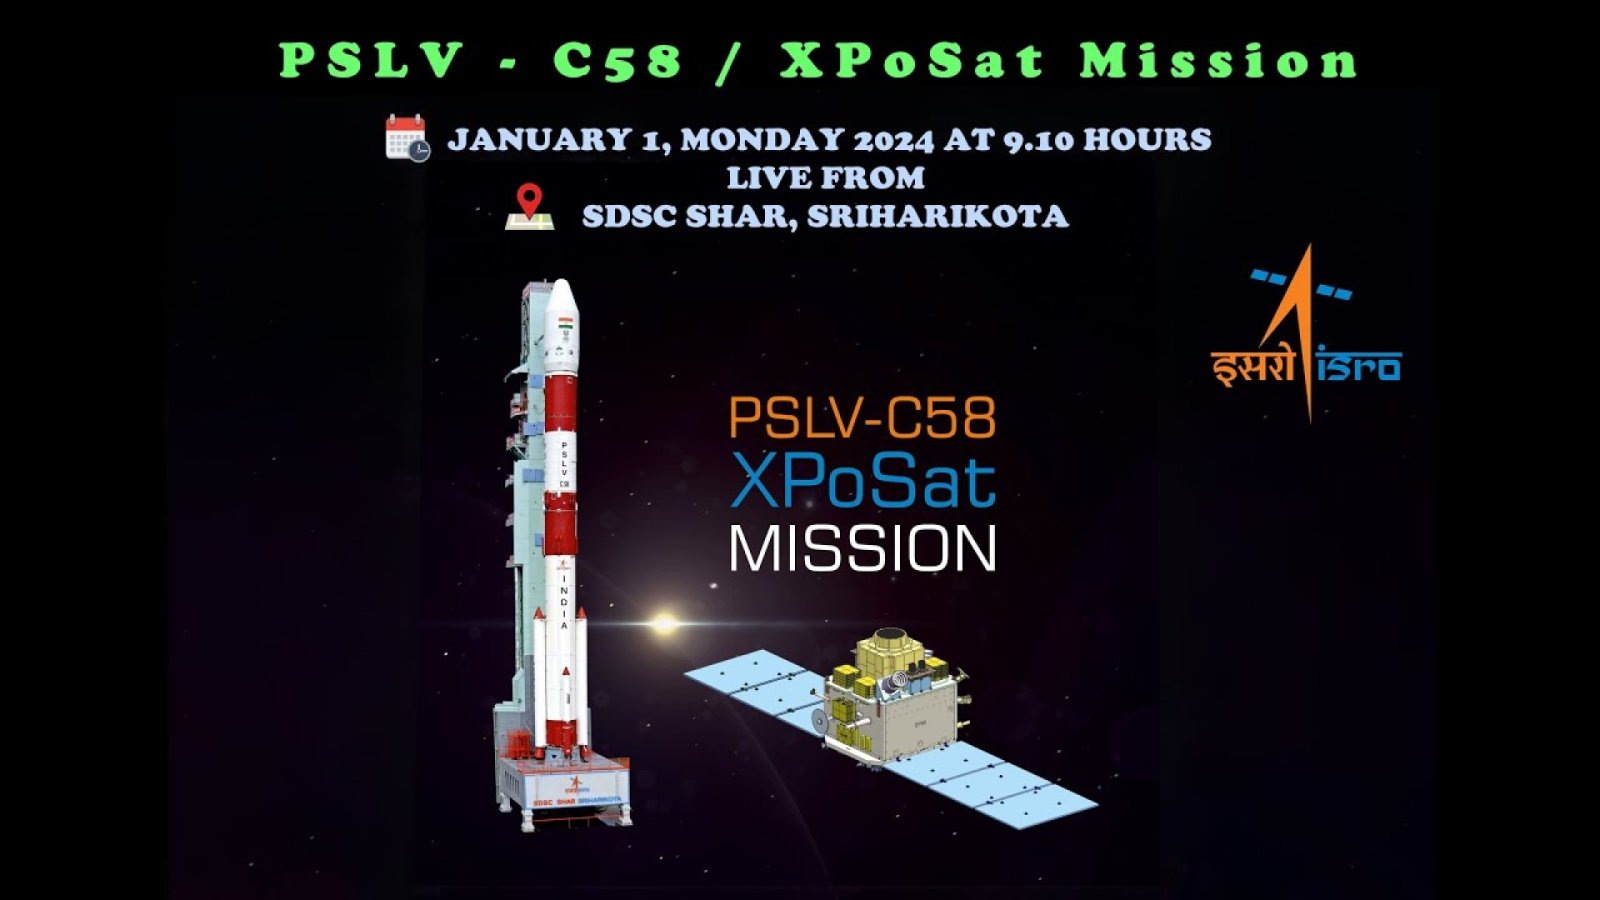 อินเดียกำลังจะปล่อยภารกิจ XPoSat ในการส่งดาวเทียมเอ็กซ์เรย์โพลาริมิเตอร์